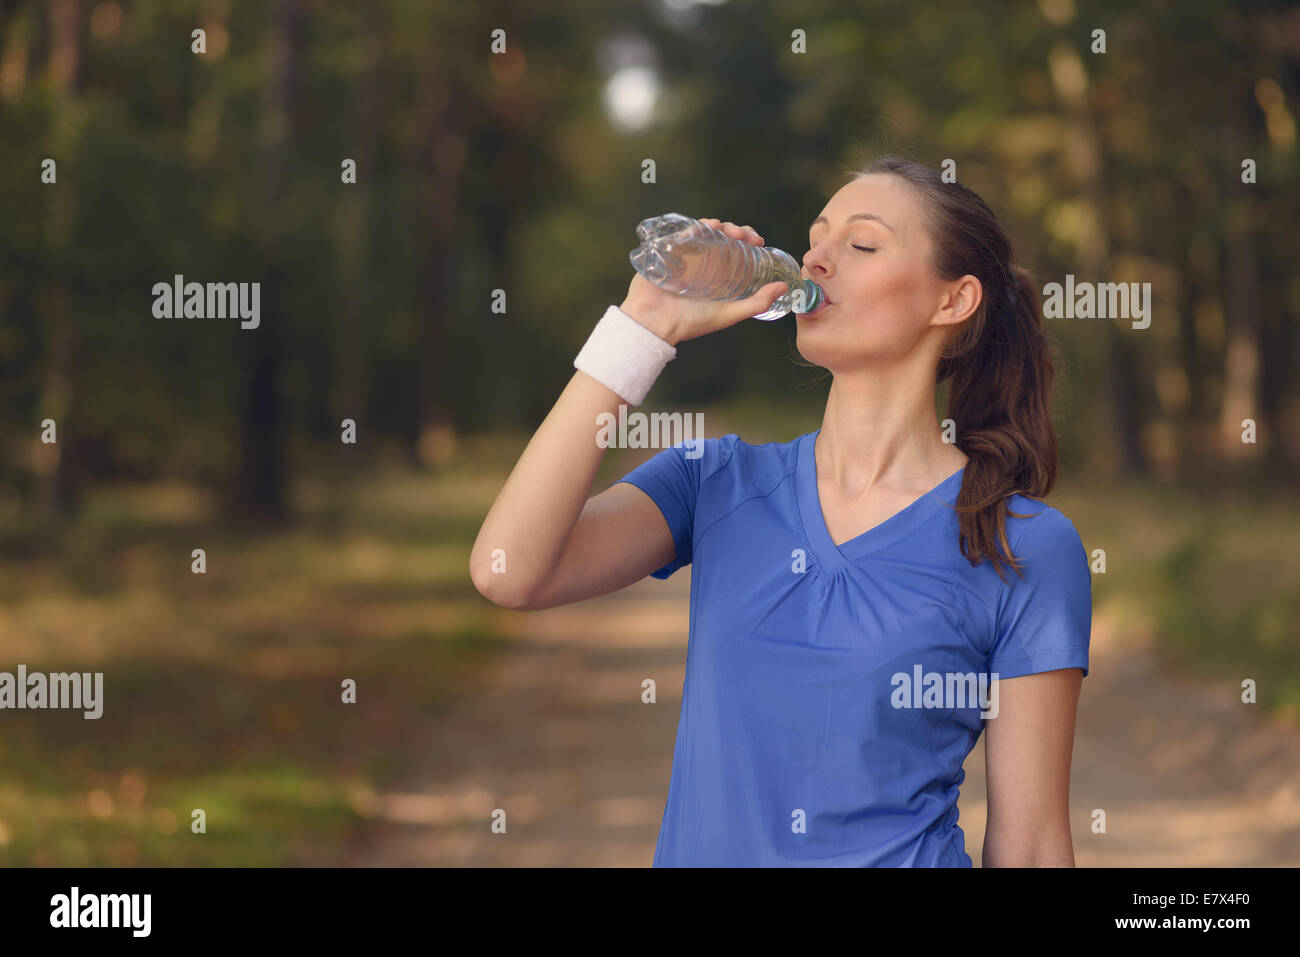 Jeune femme élancée fit boire de l'eau embouteillée dans les vêtements de sport alors qu'elle s'arrête sur une piste forestière à réhydrater pendant un run de formation Banque D'Images